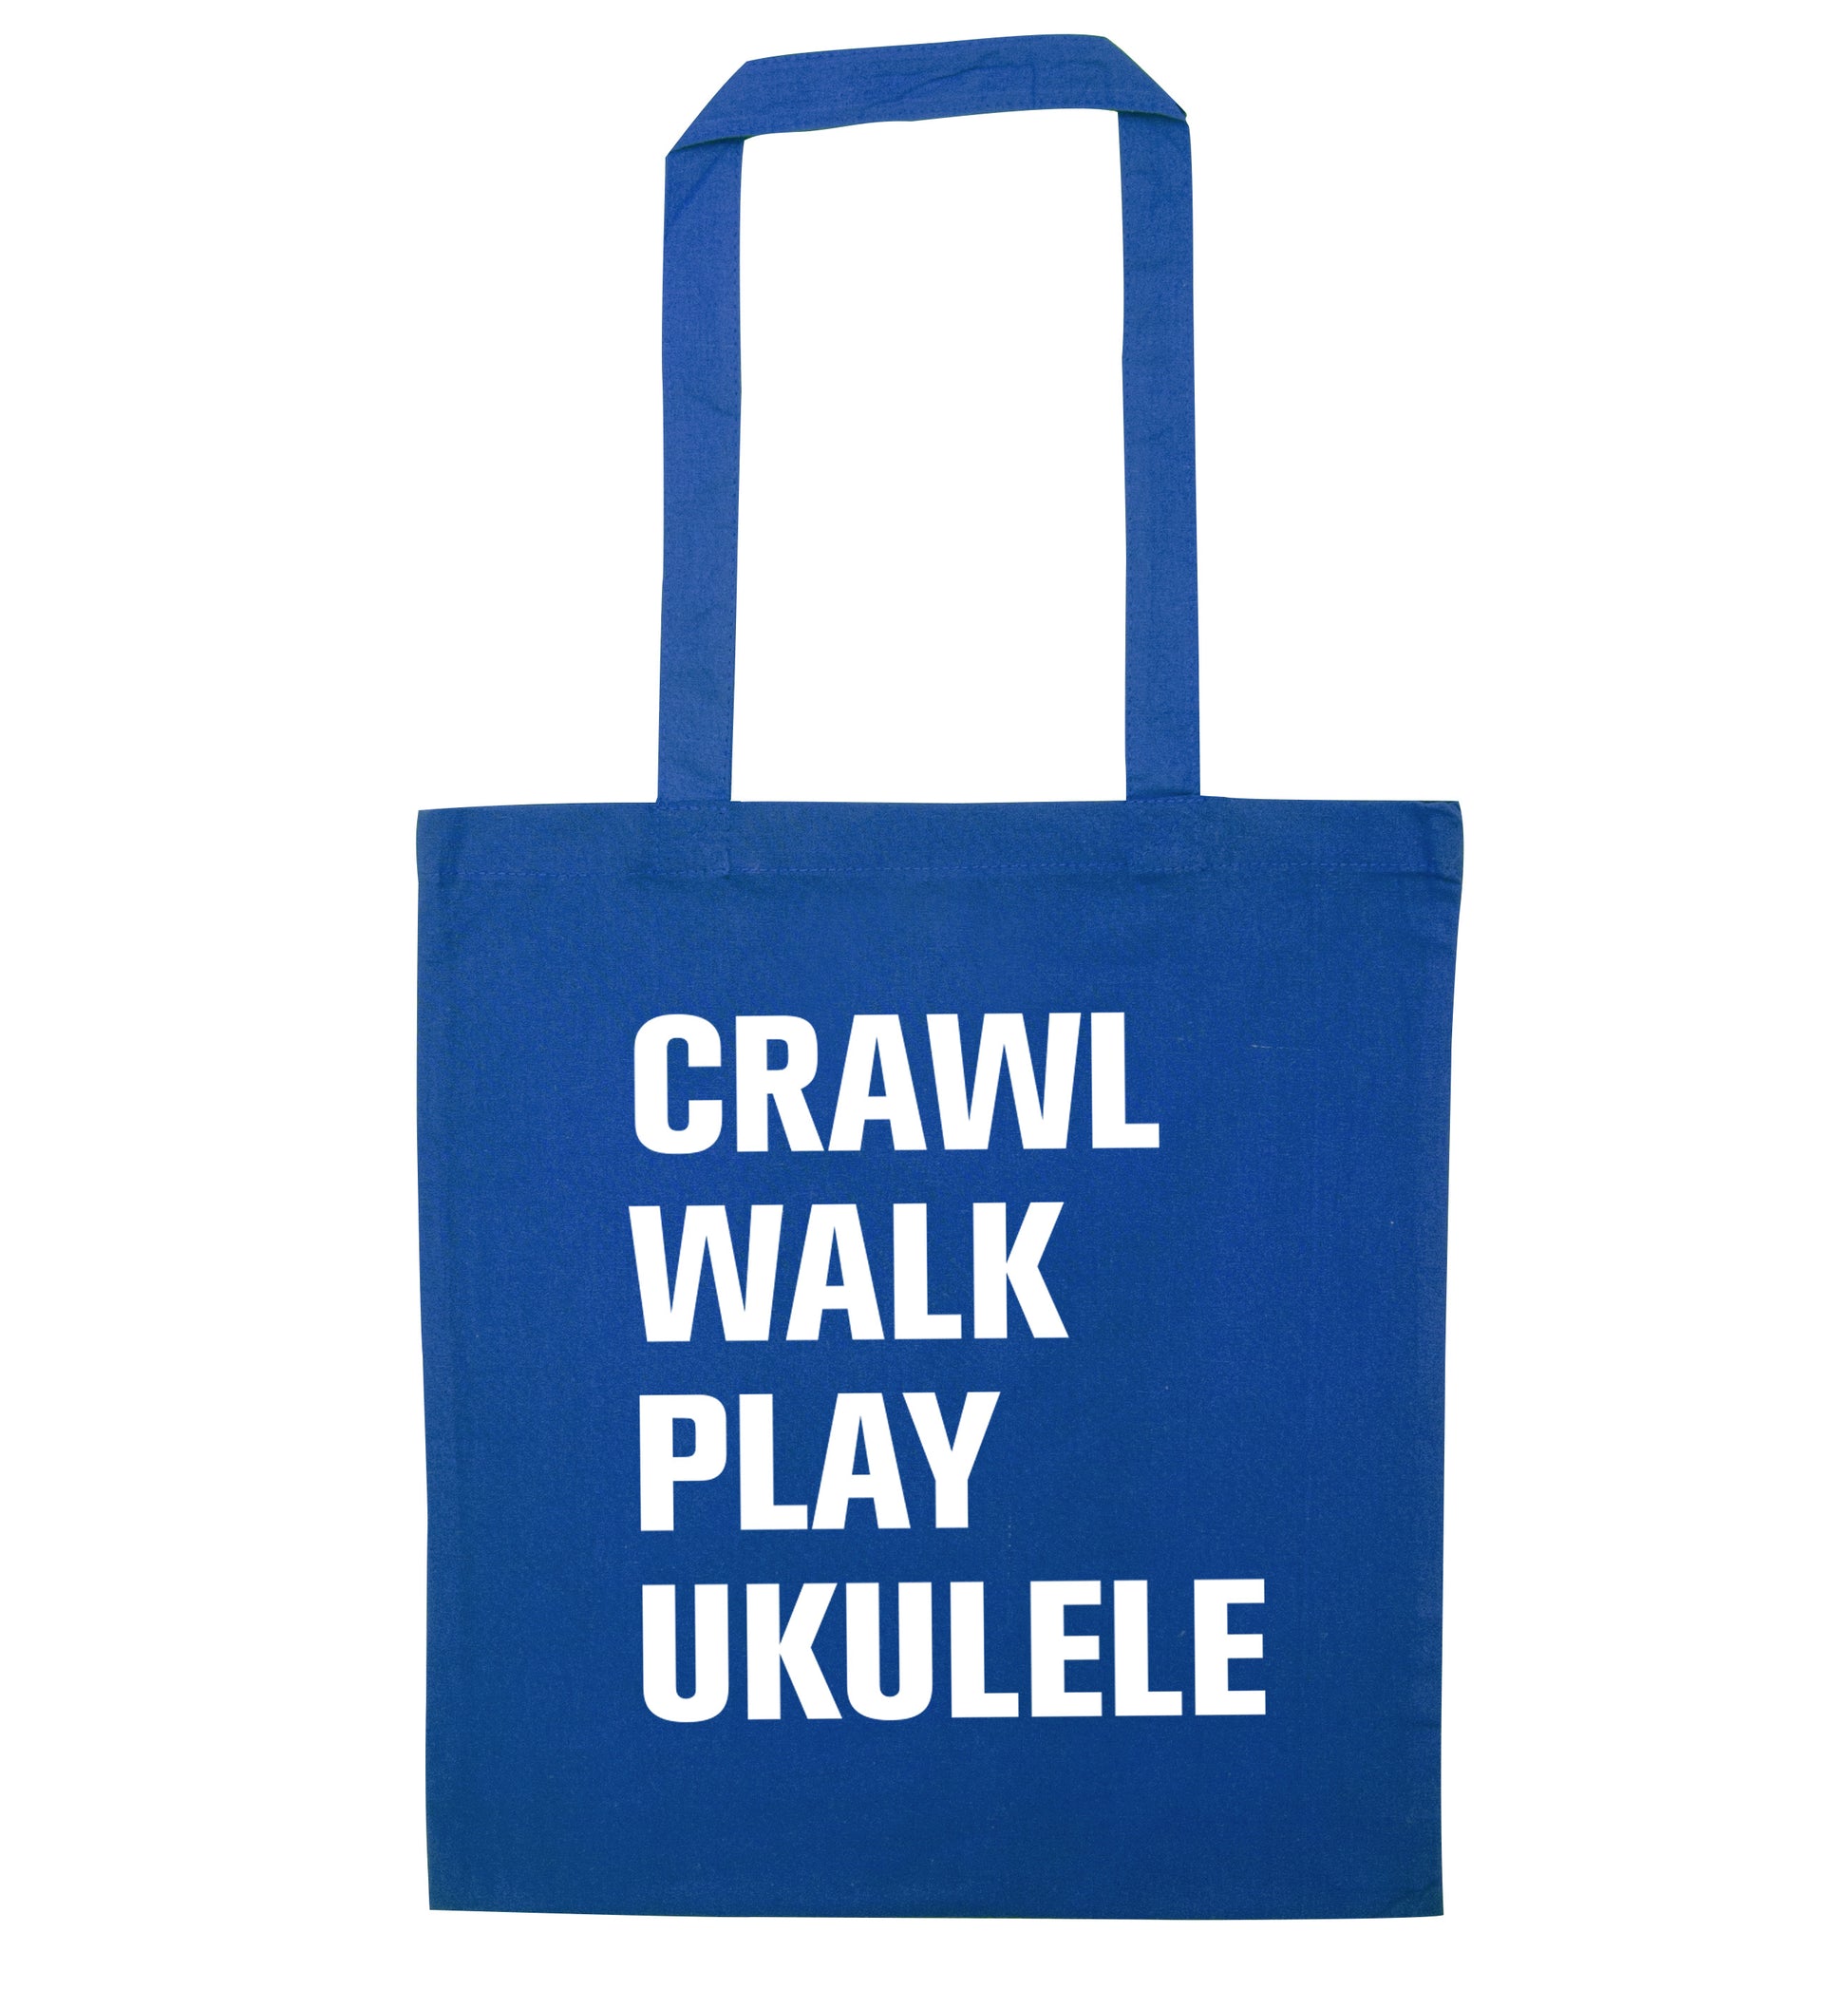 Crawl walk play ukulele blue tote bag